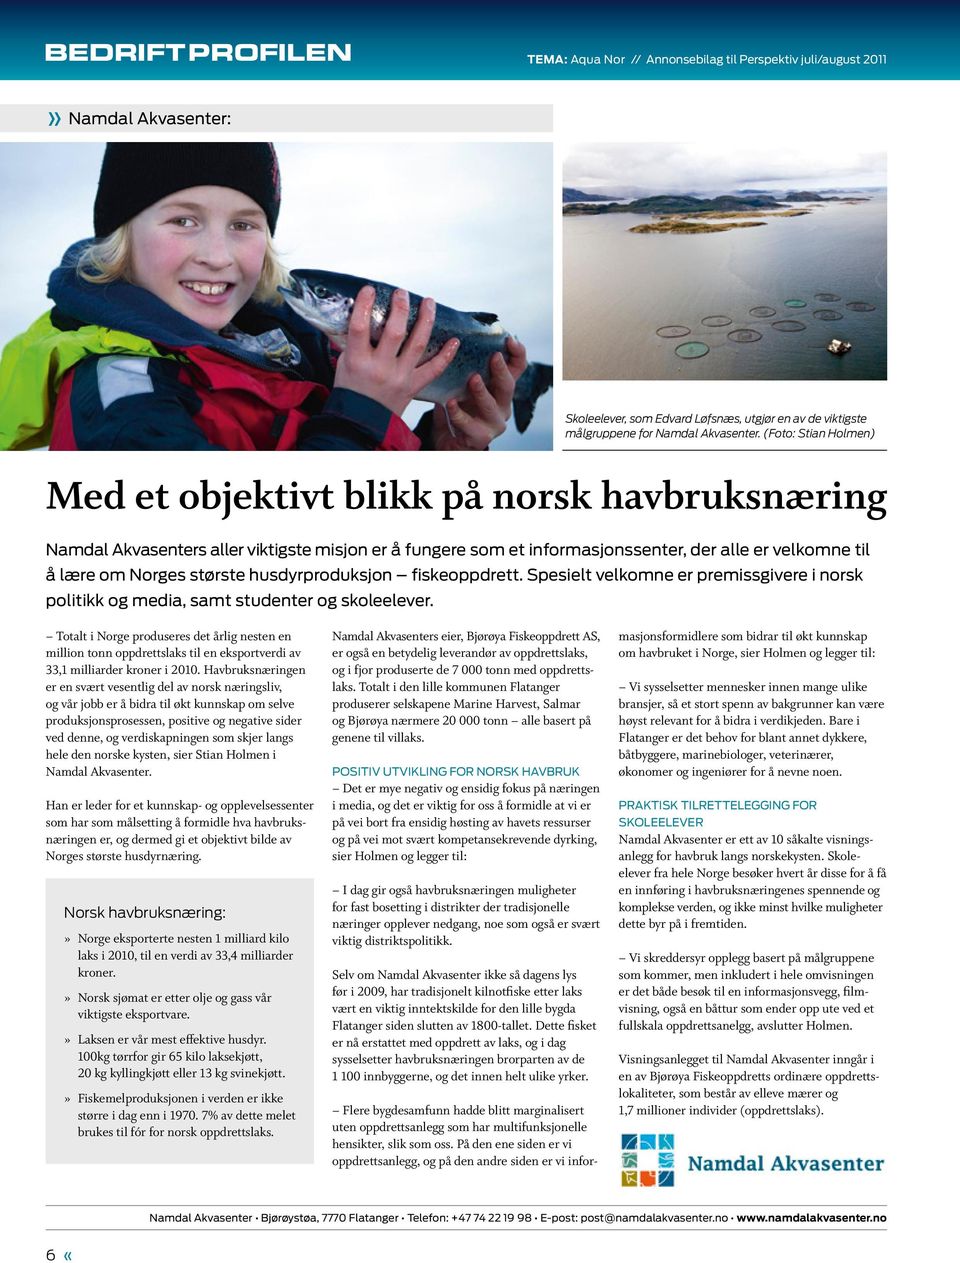 husdyrproduksjon fiskeoppdrett. Spesielt velkomne er premissgivere i norsk politikk og media, samt studenter og skoleelever.